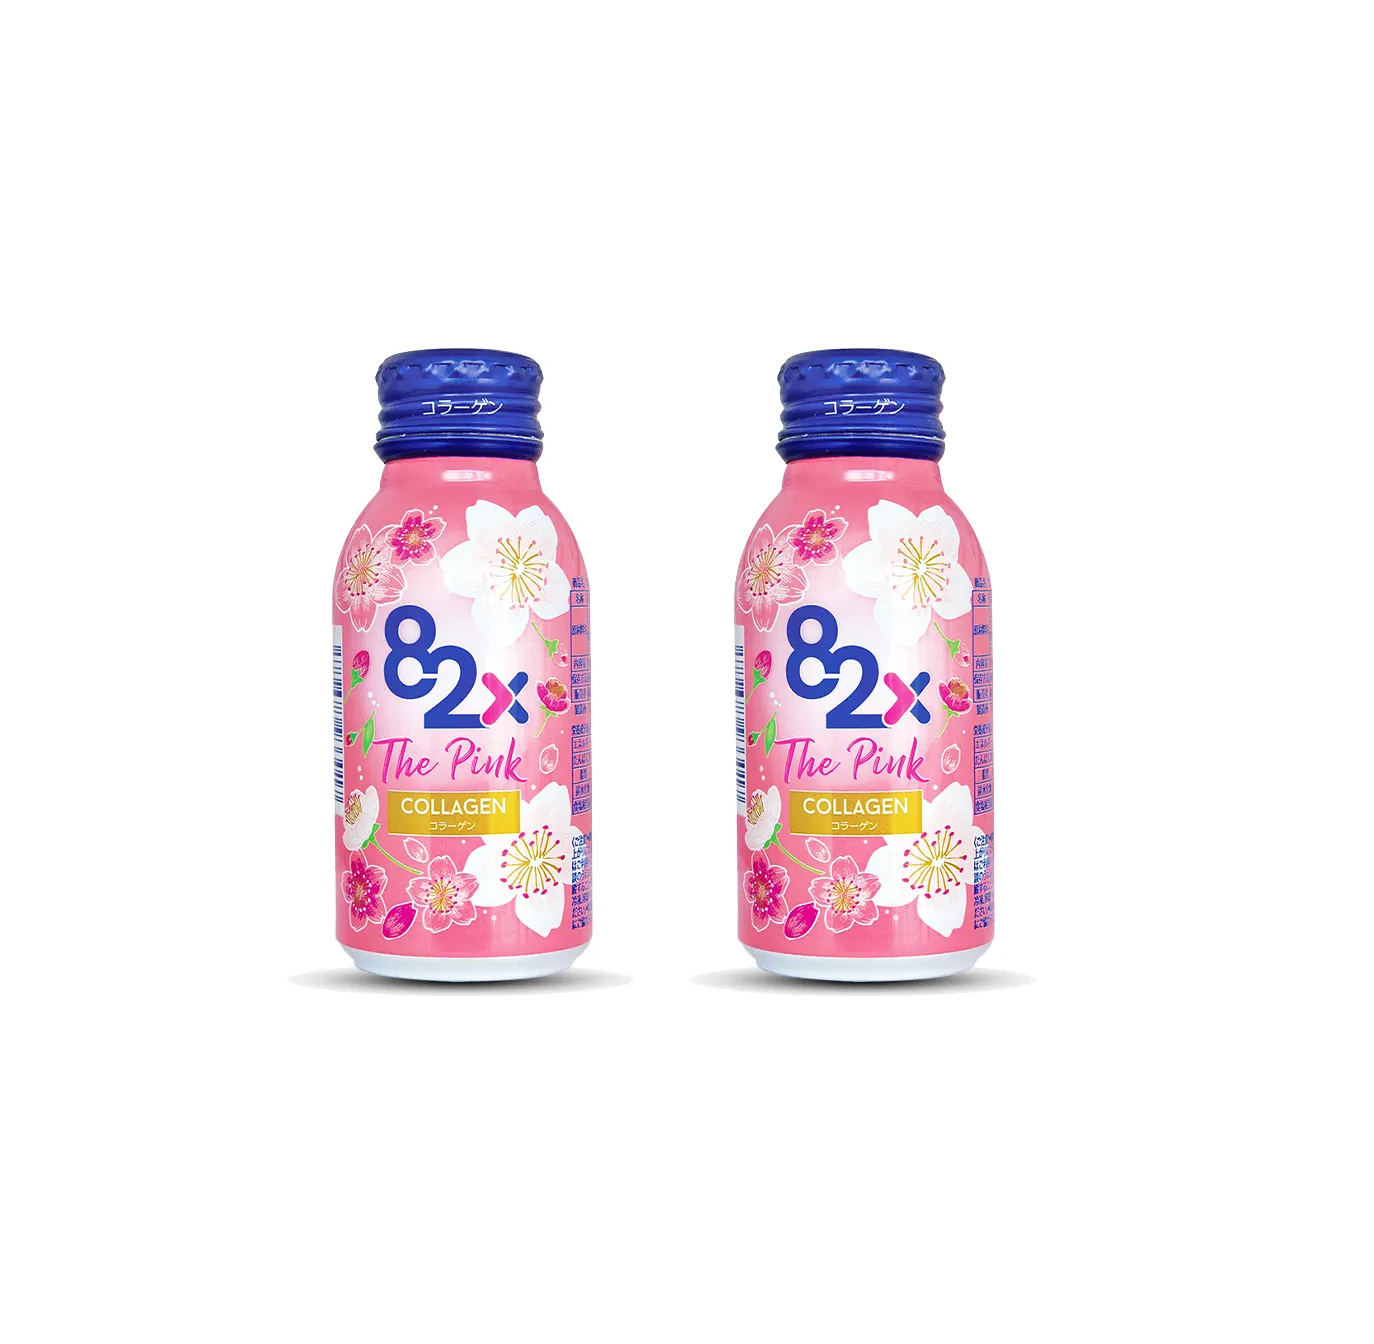 Оптовая продажа, Япония 82X розовая Антивозрастная морская добавка коллагеновая добавка, напиток для ухода за кожей, косметический продукт, коллагеновая жидкость для полости рта